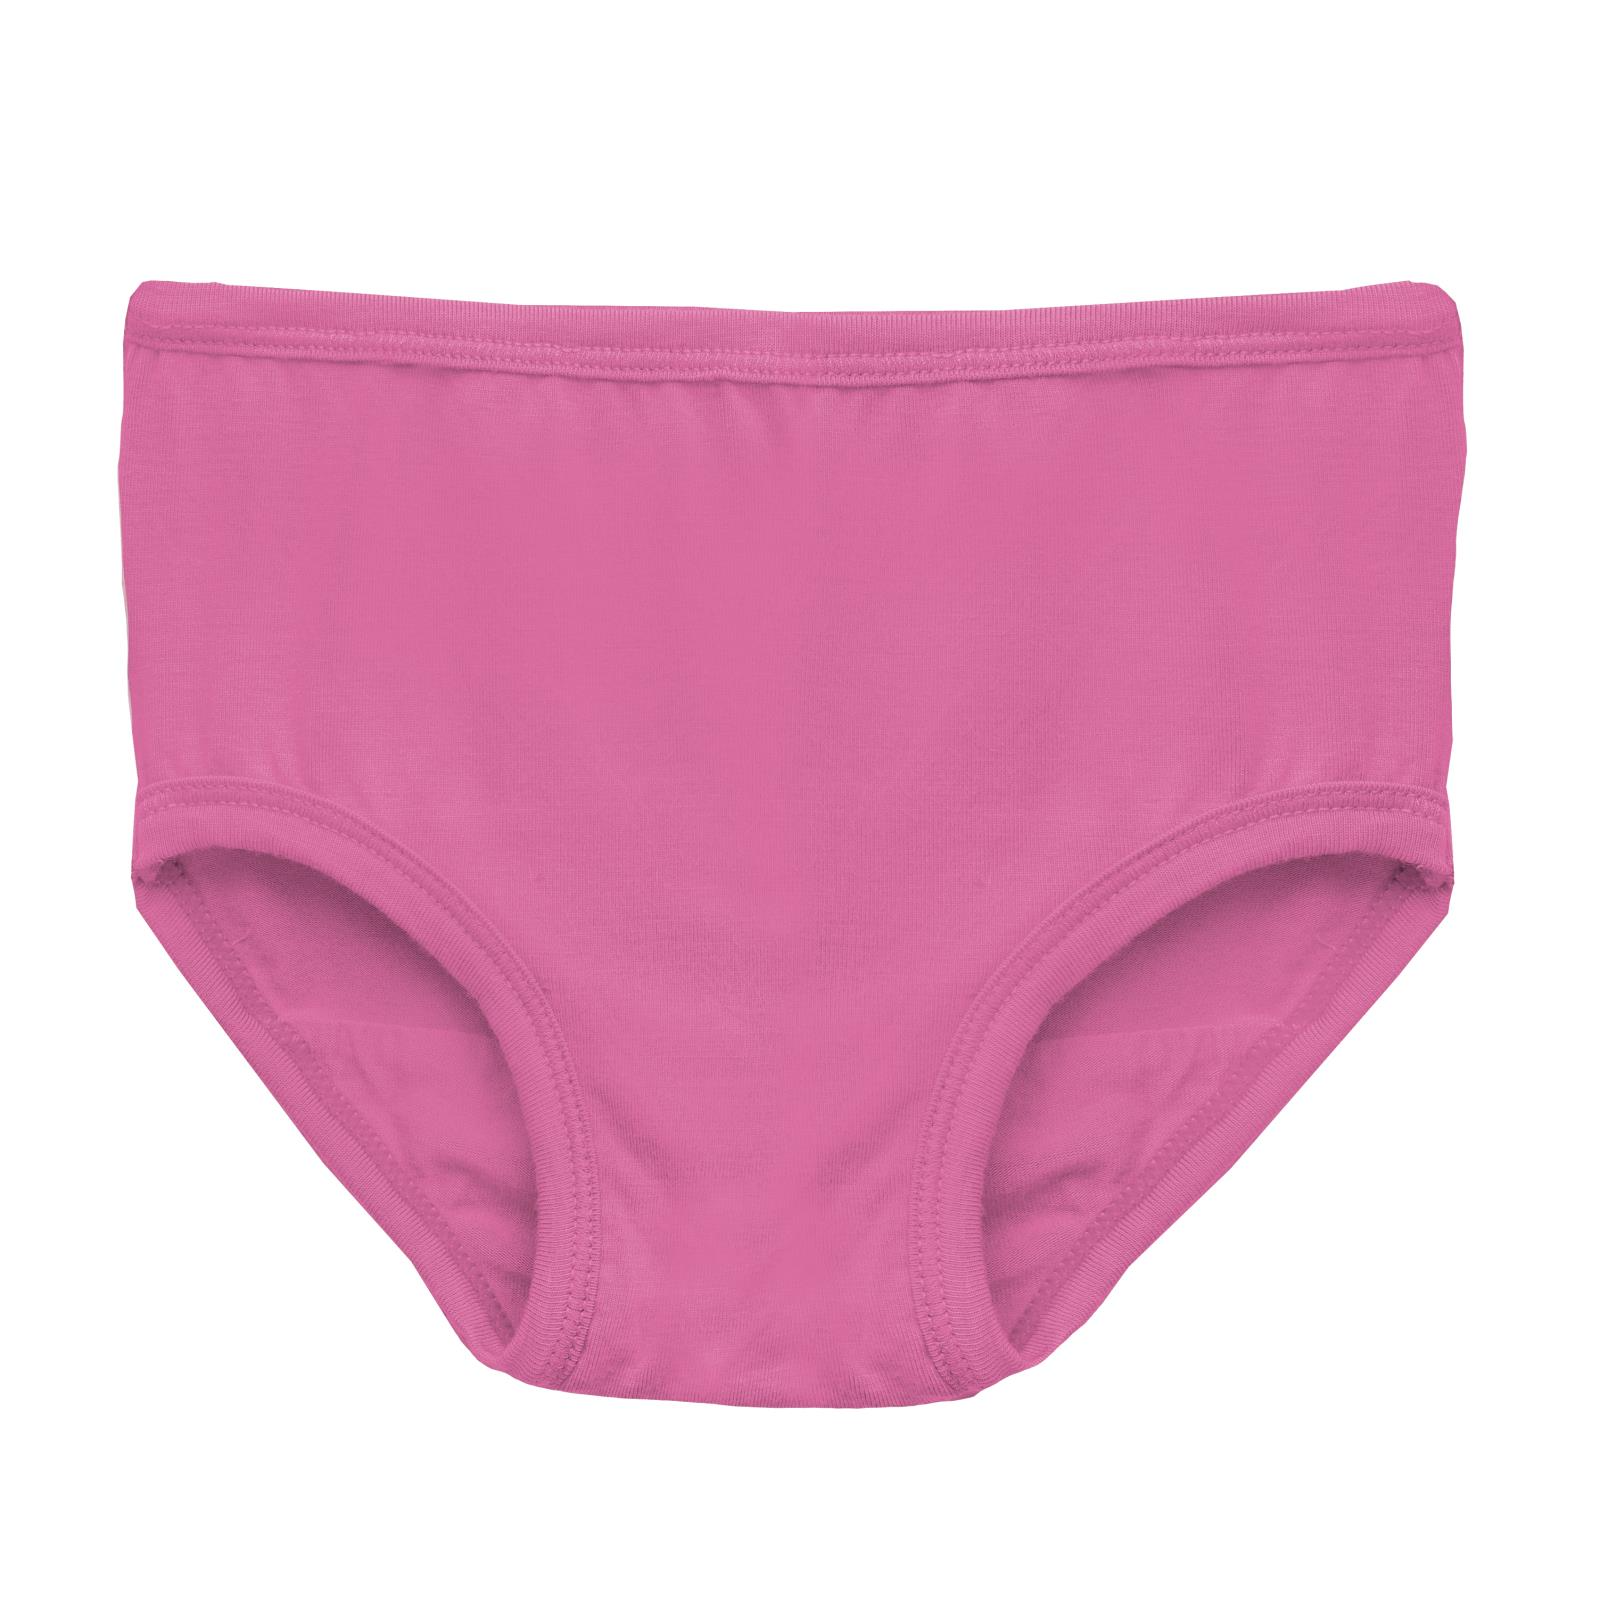 Cotton Underpants Shorts, Year Girls Underwear Set